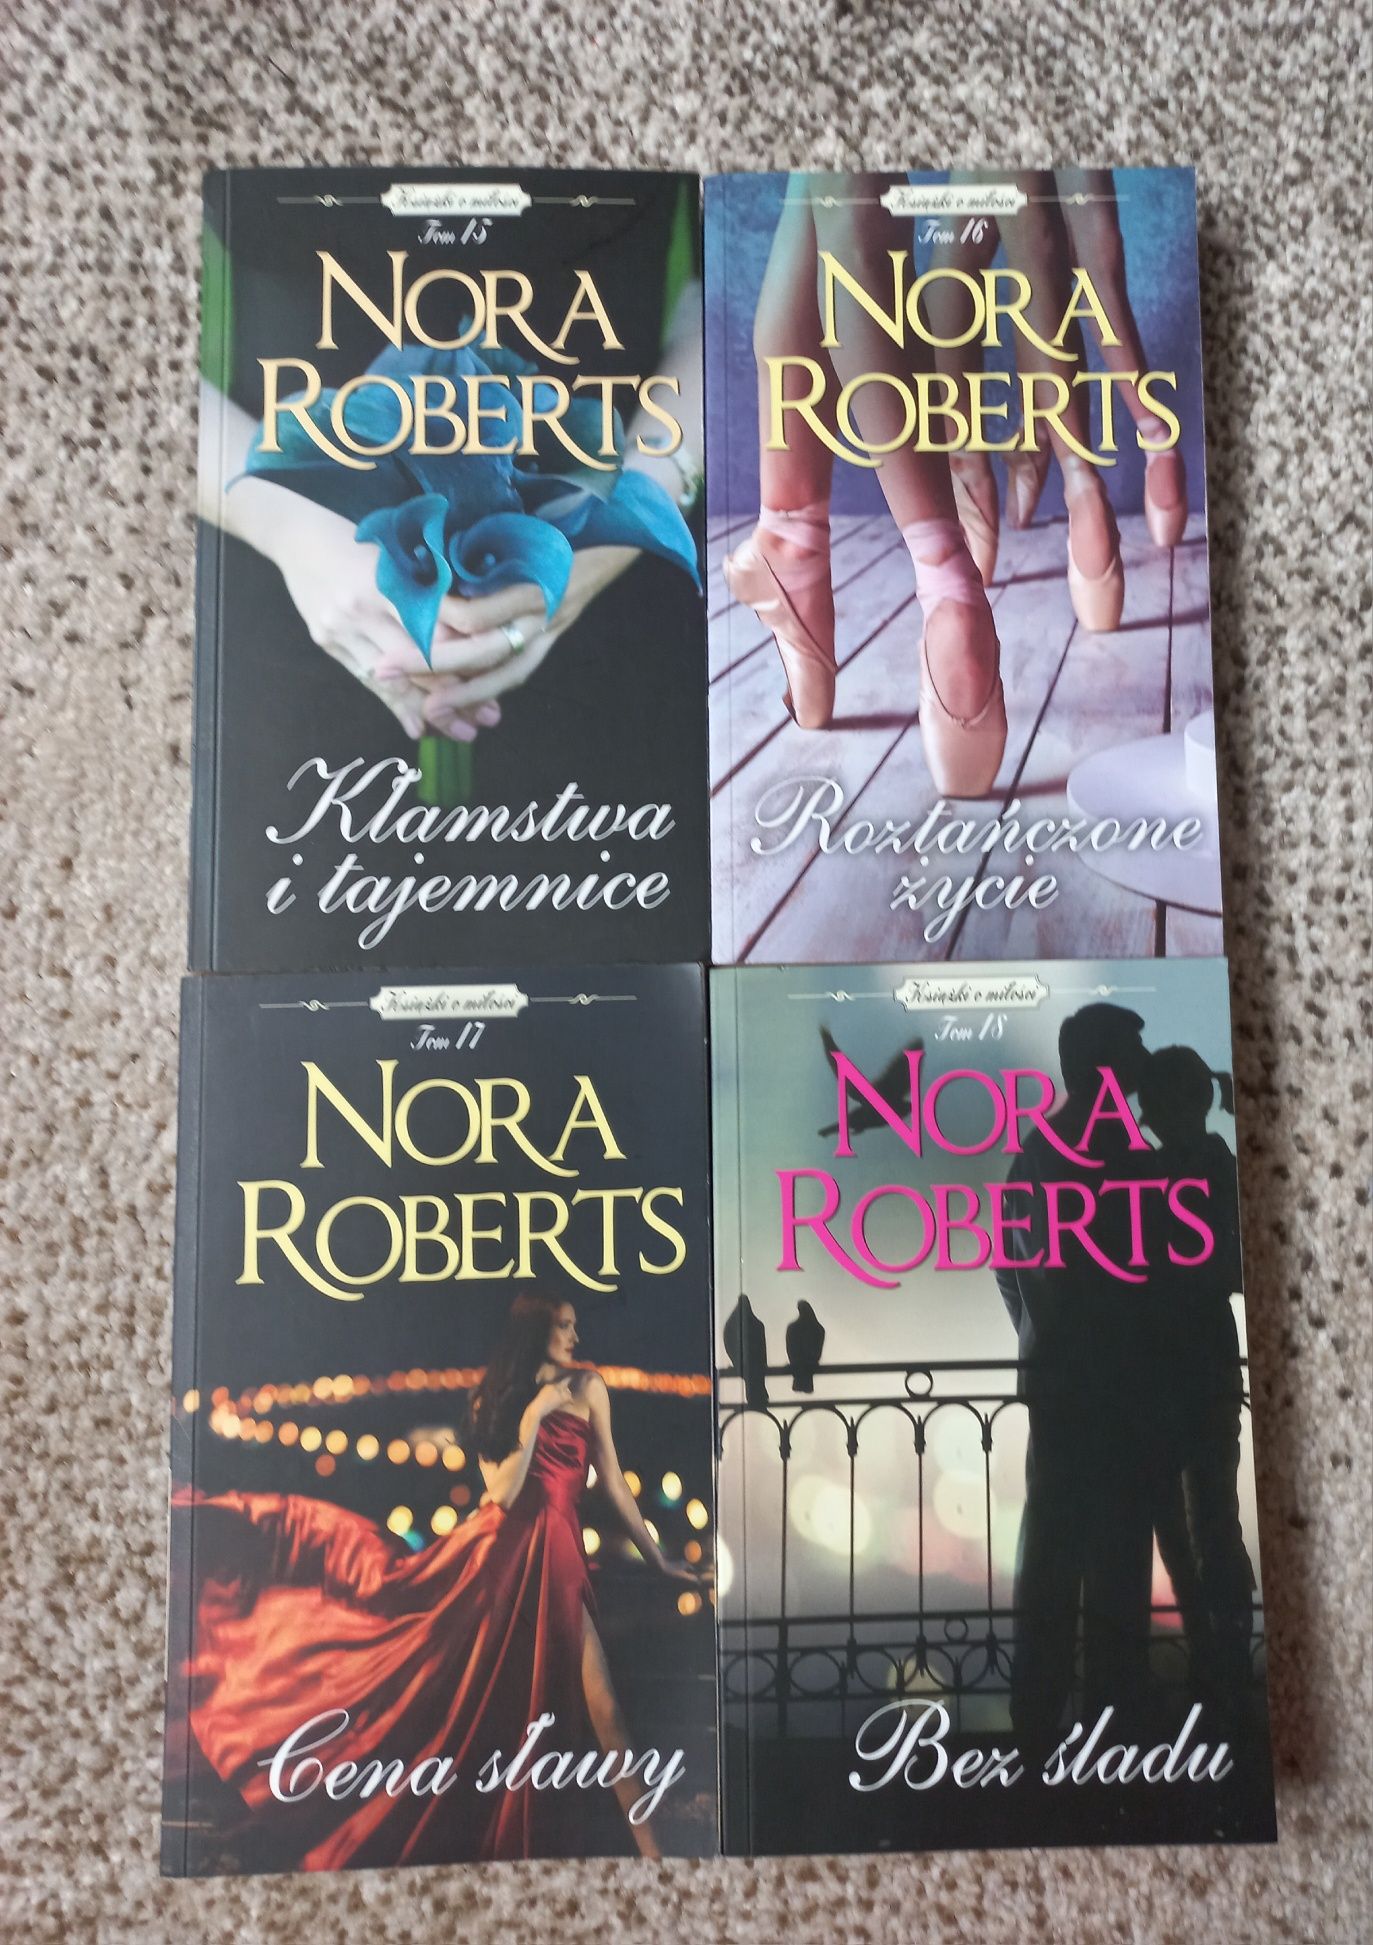 Kłamstwa I tajemnice Roztańczone ż cena sławy Bez śladu Nora Roberts